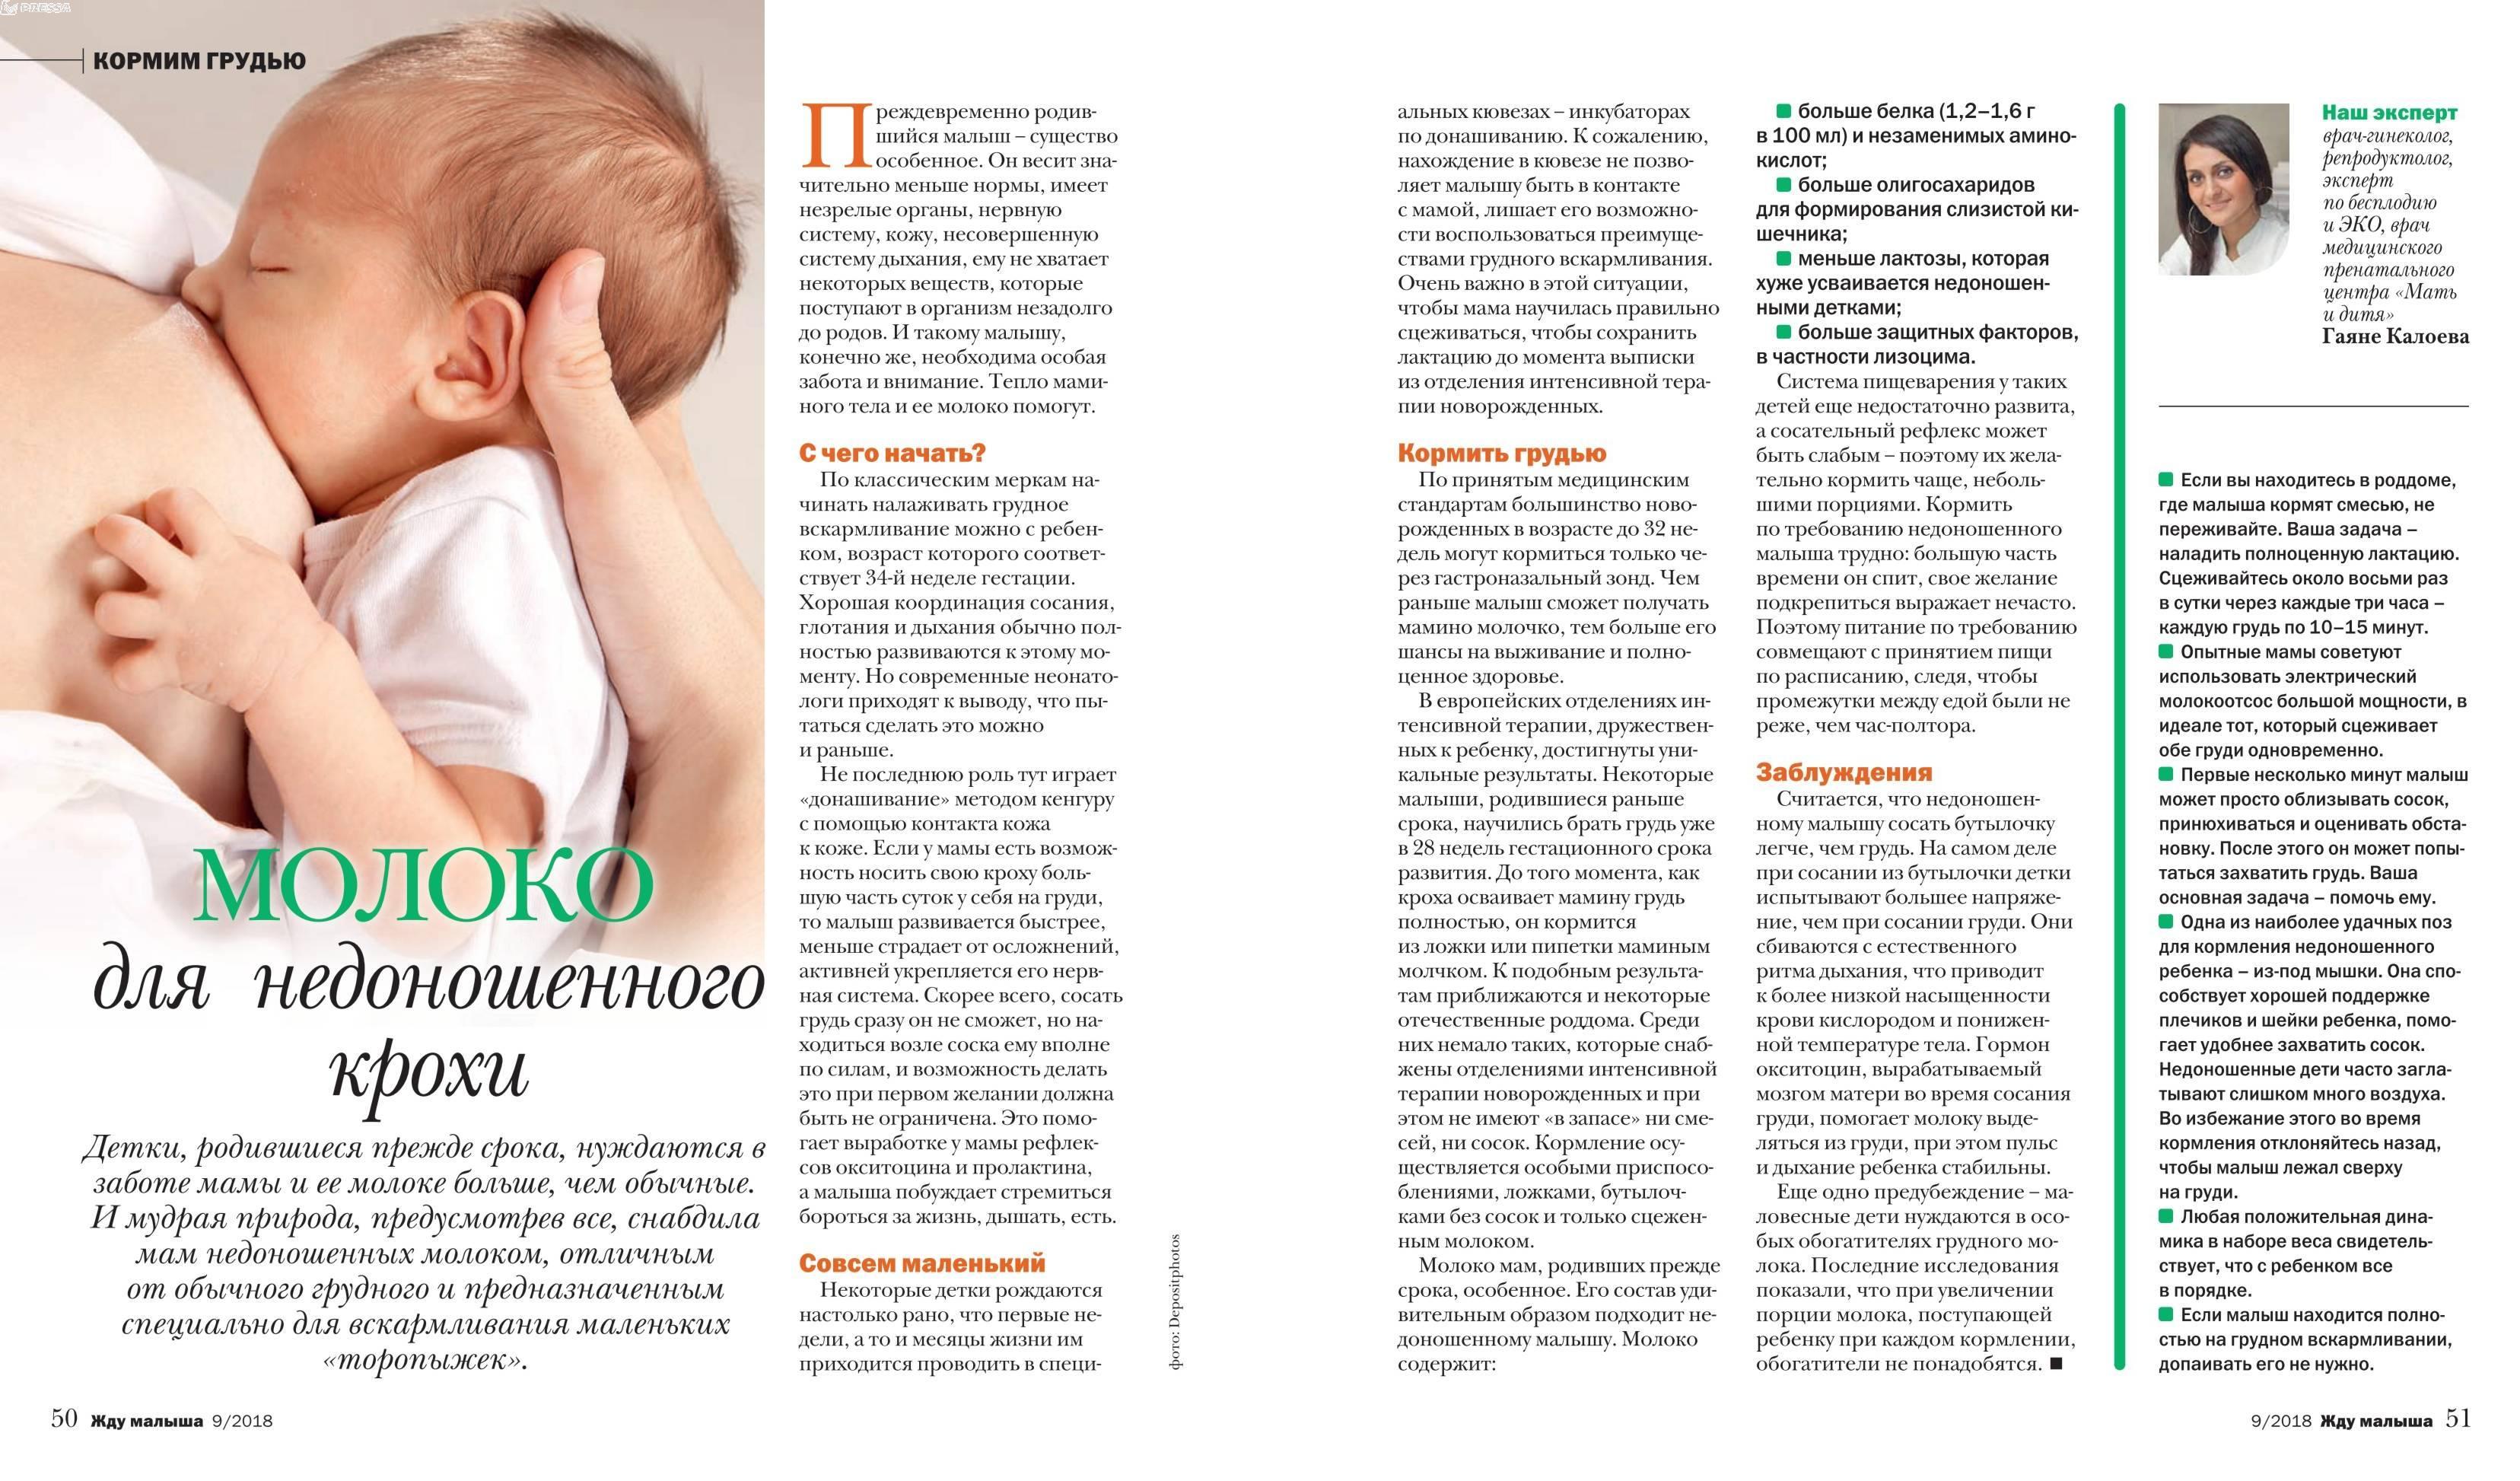 Бронхит  у детей - опасность, симптомы, причины, лечение | детская пульмонология см-клиники в спб